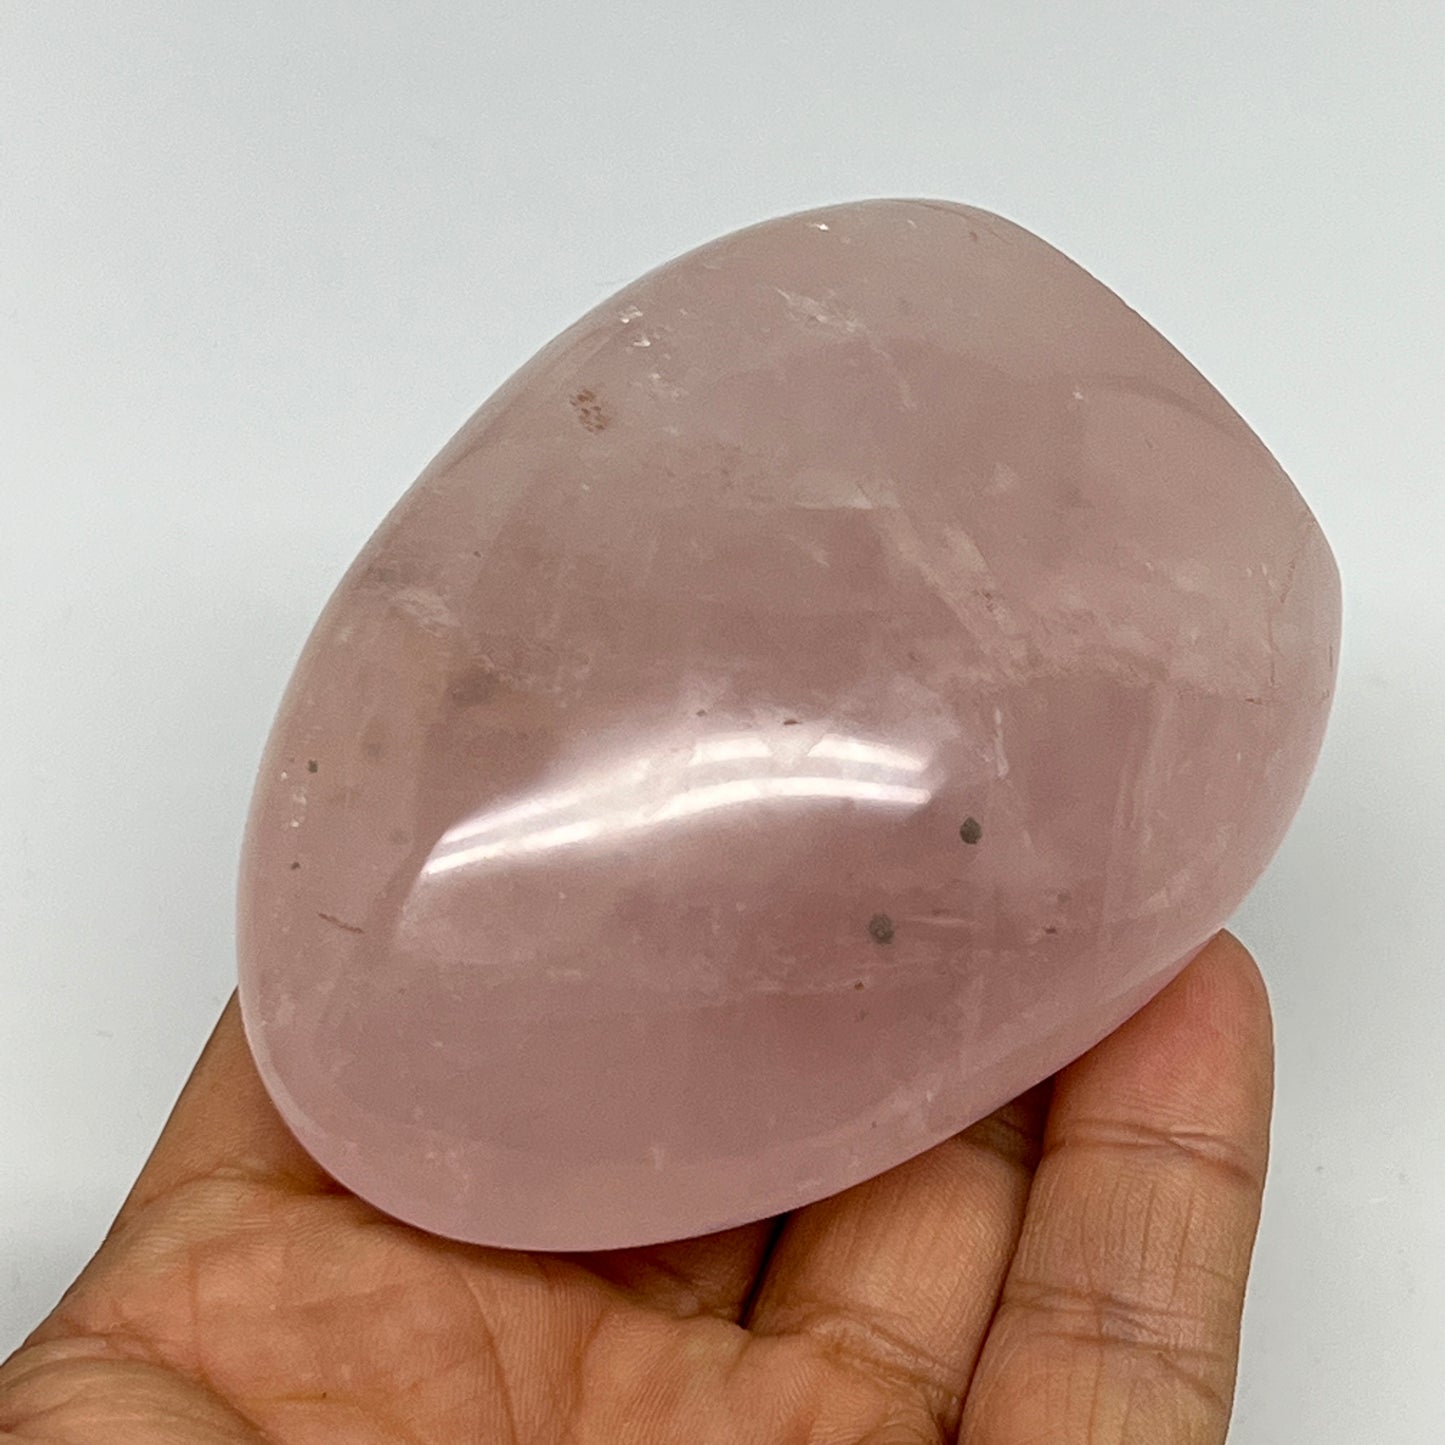 224g,3.1"x2.4"x1.3" Rose Quartz Crystal Freeform Polished Crystal, B20674